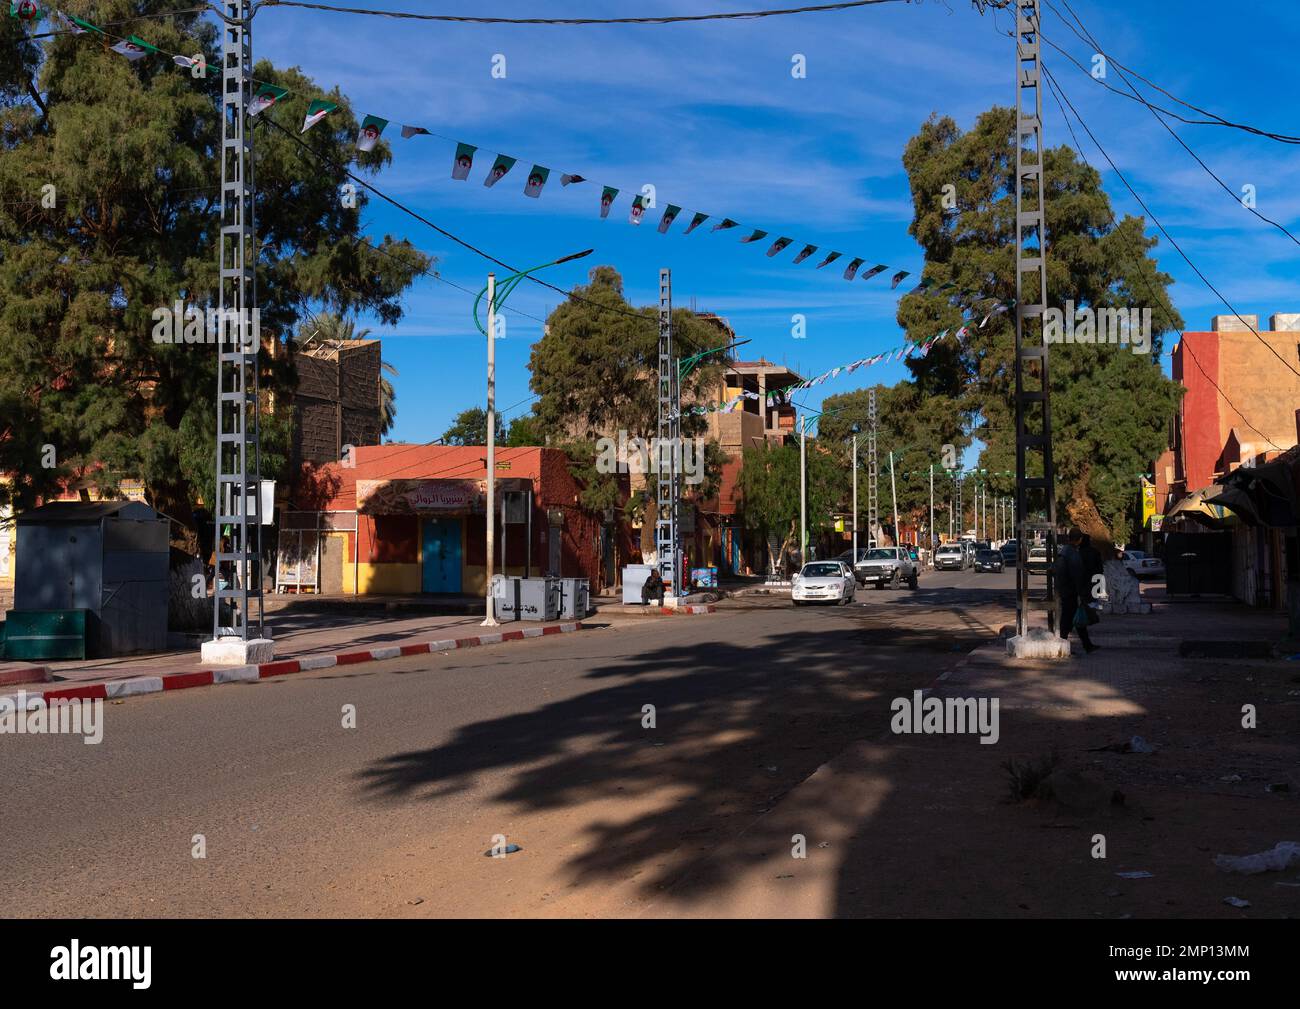 Road in city center, North Africa, Tamanrasset, Algeria Stock Photo